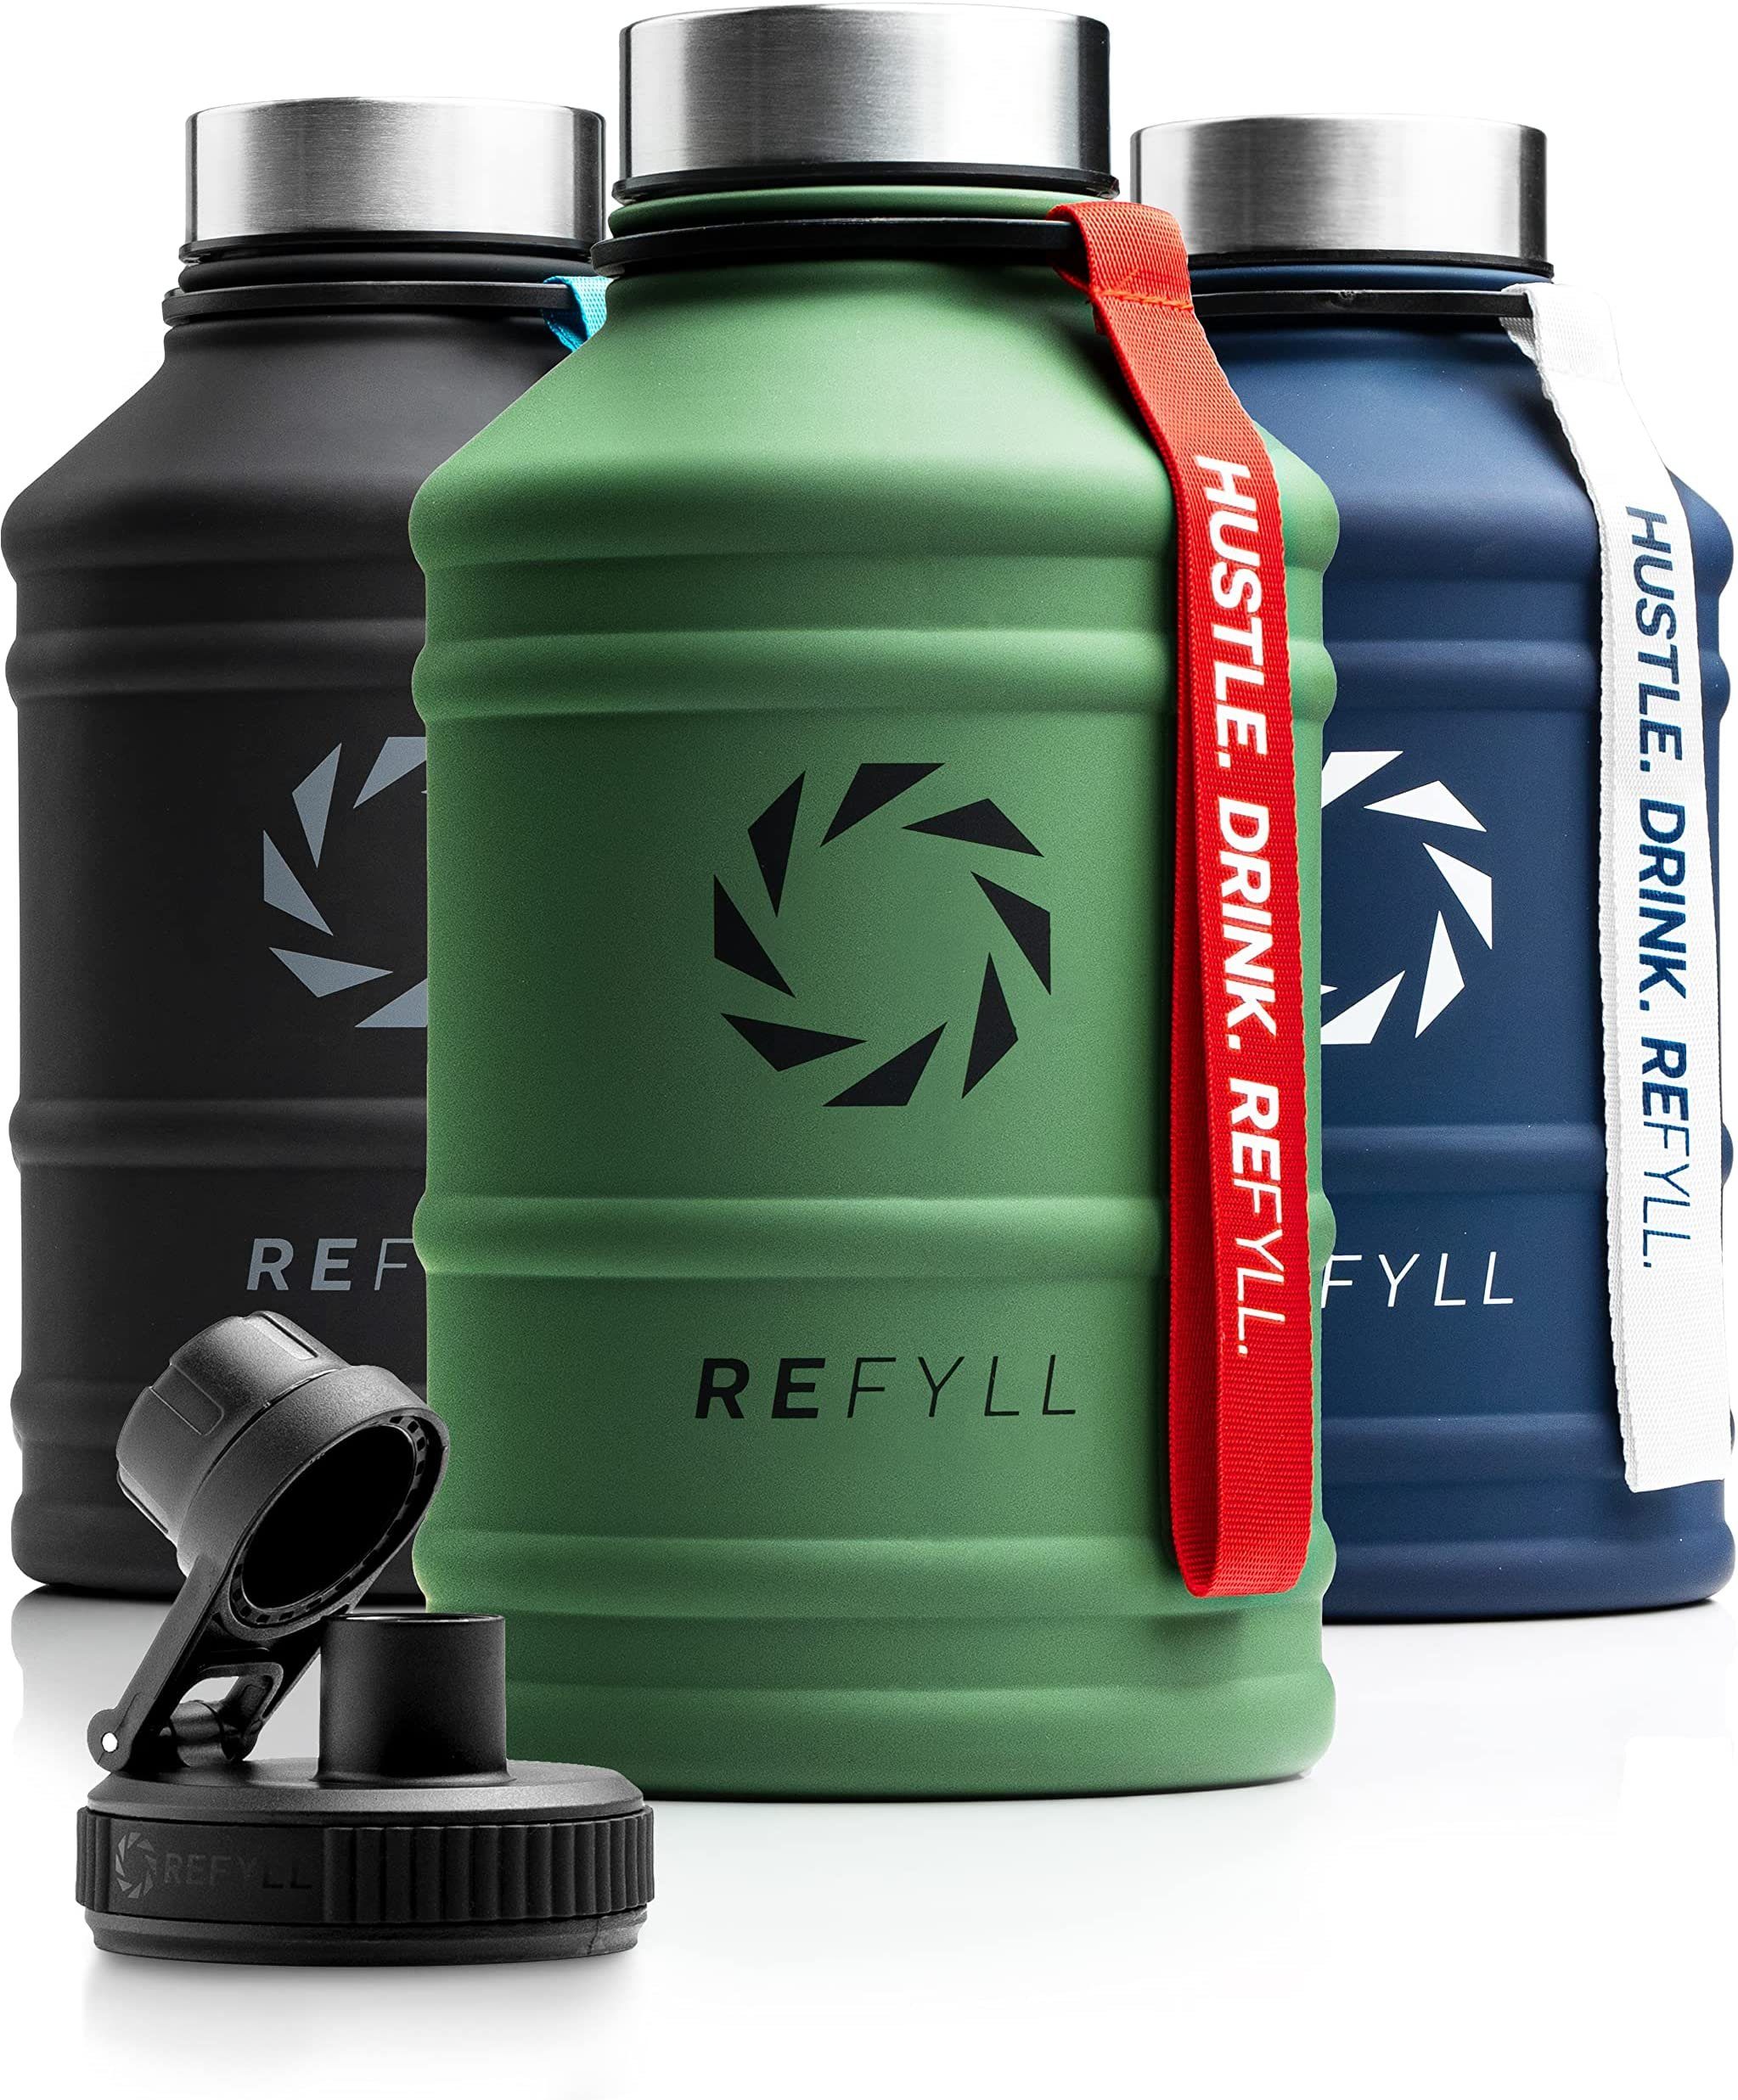 REFYLL Trinkflasche Edelstahl Trinkflasche Hero 1,3L und 2,2L, Auslaufsicher, robust, Fitness Trinkflasche für Sport, Gym, Water Jug auslaufsicher Army Green 2,2 L